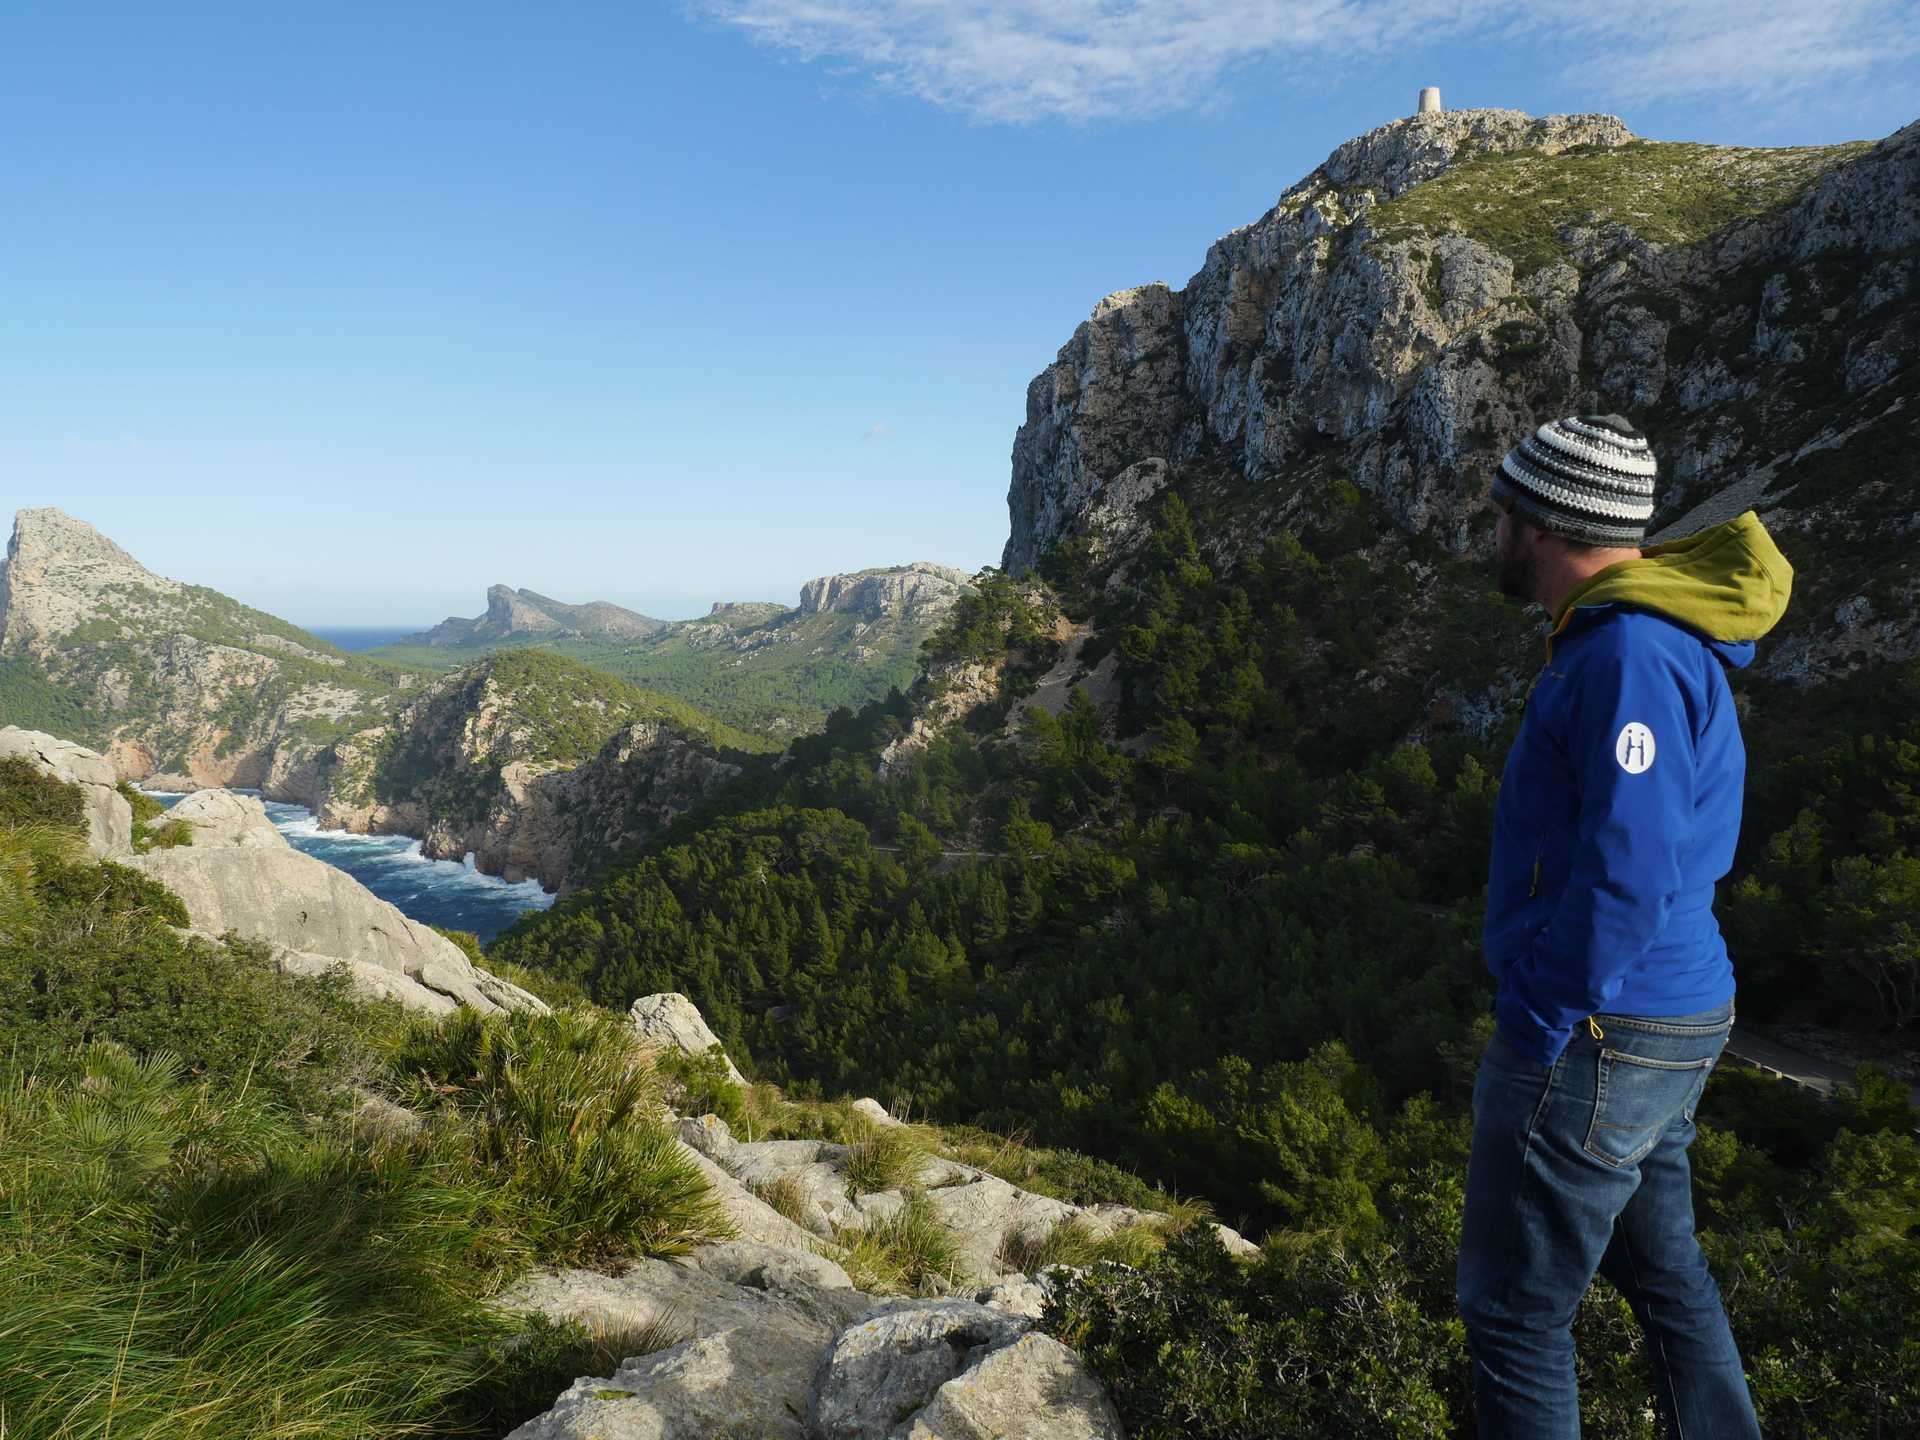 Randonneur qui admire le panorama sur la Cap de Formentor entre mer et montagne